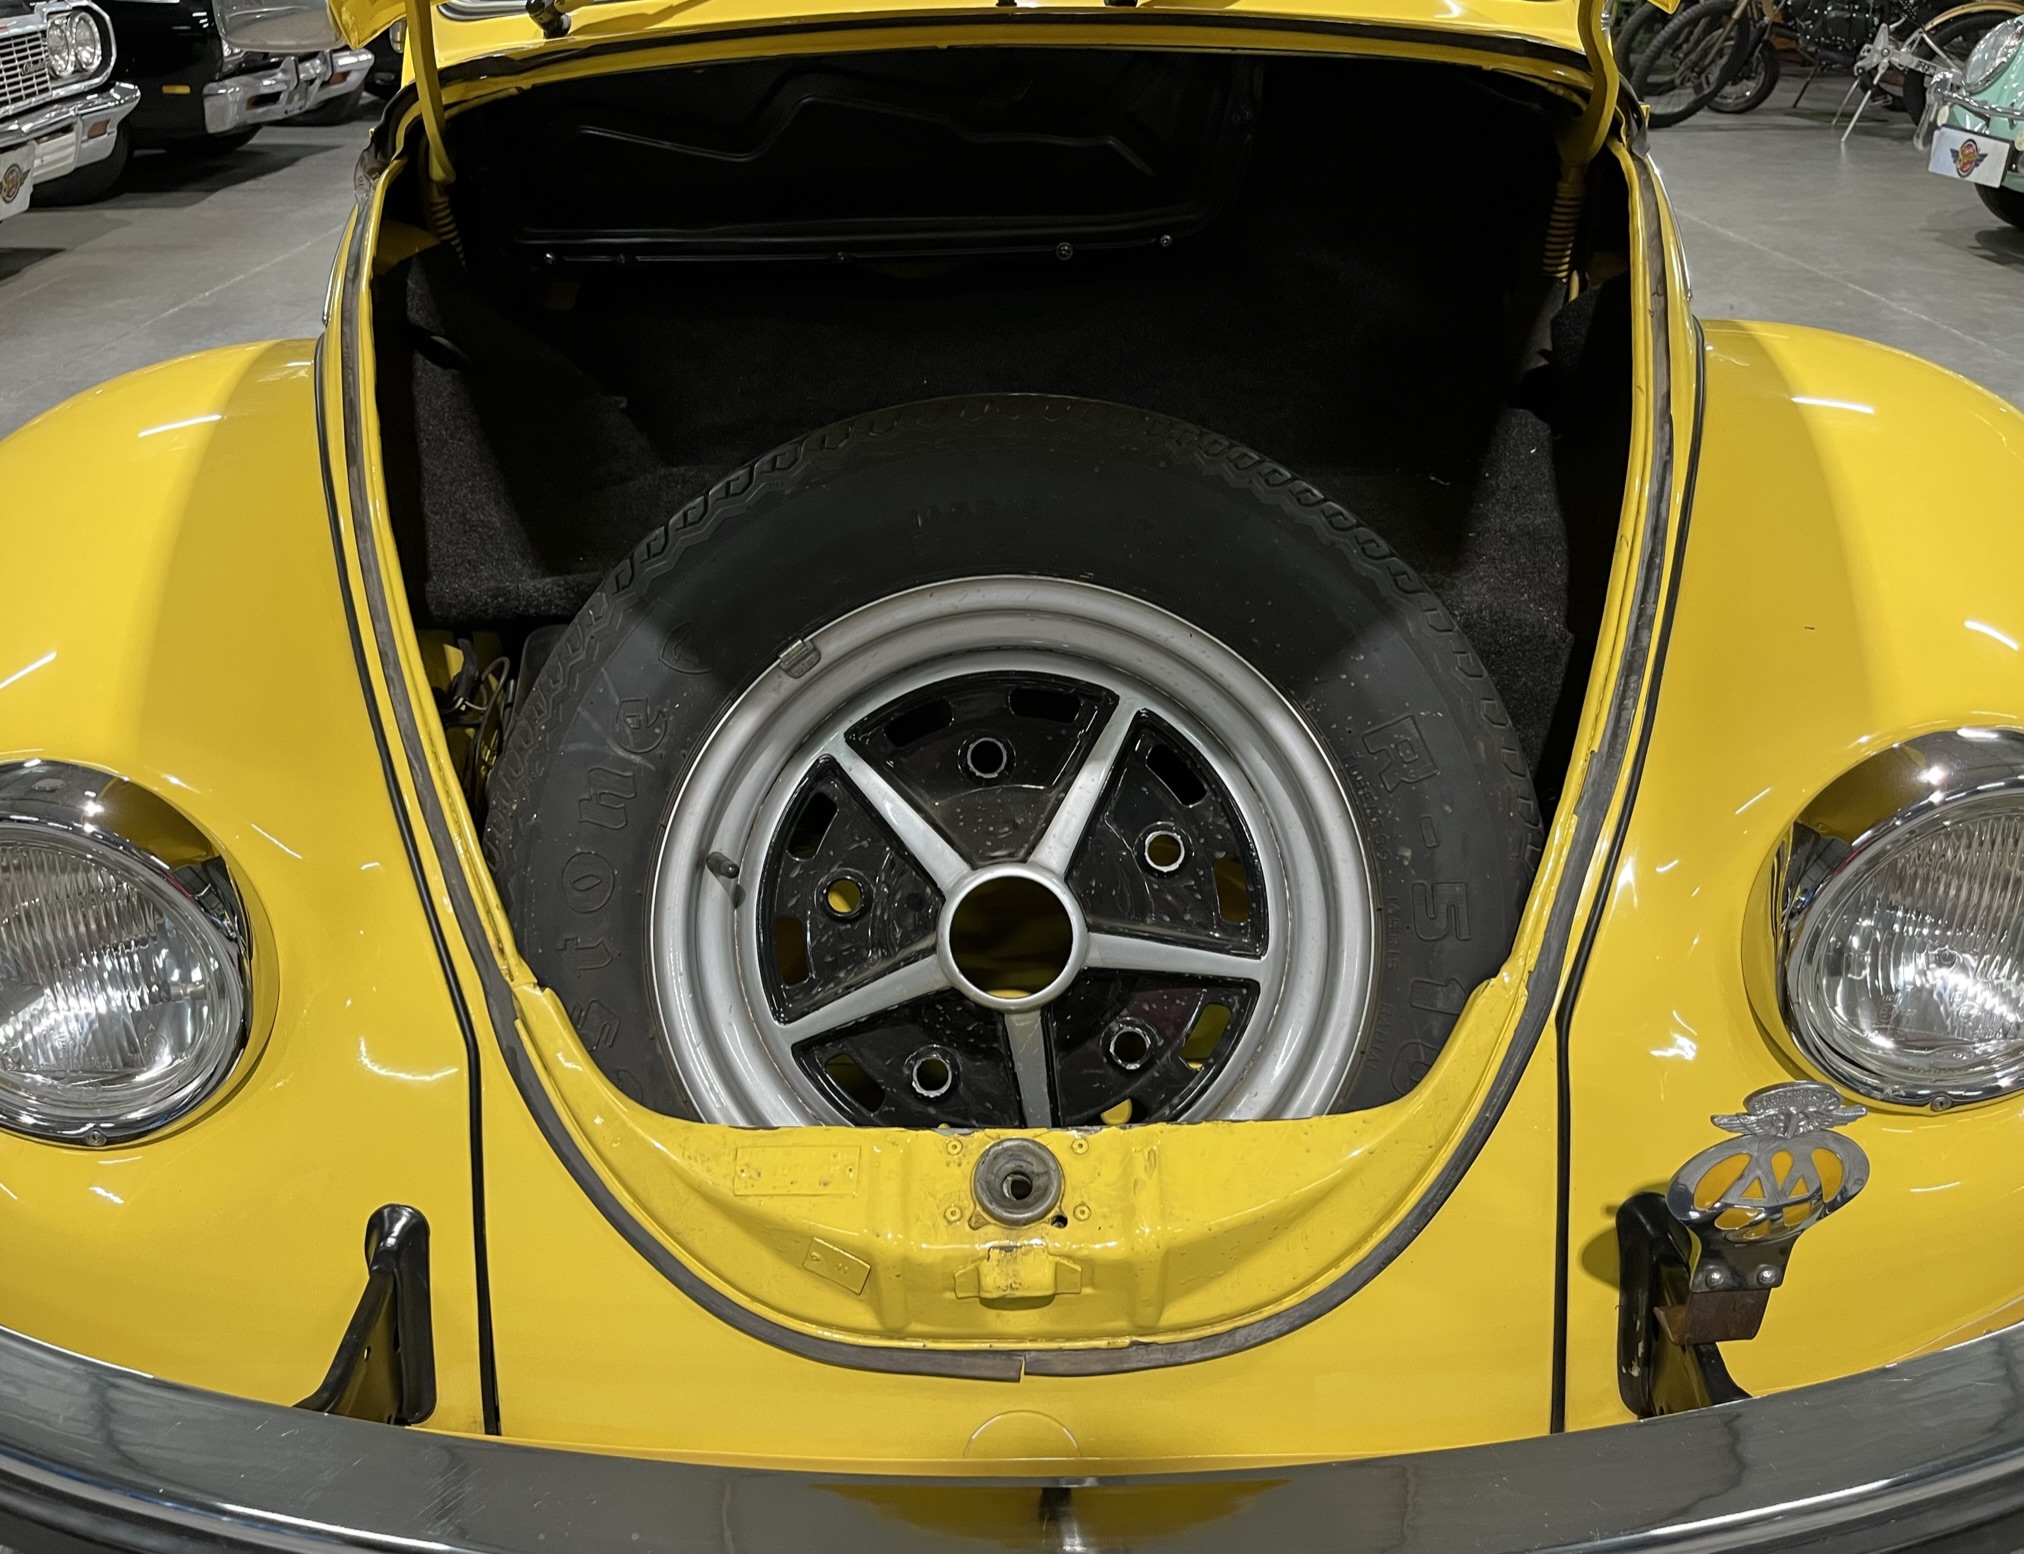 1975 Volkswagen Beetle S